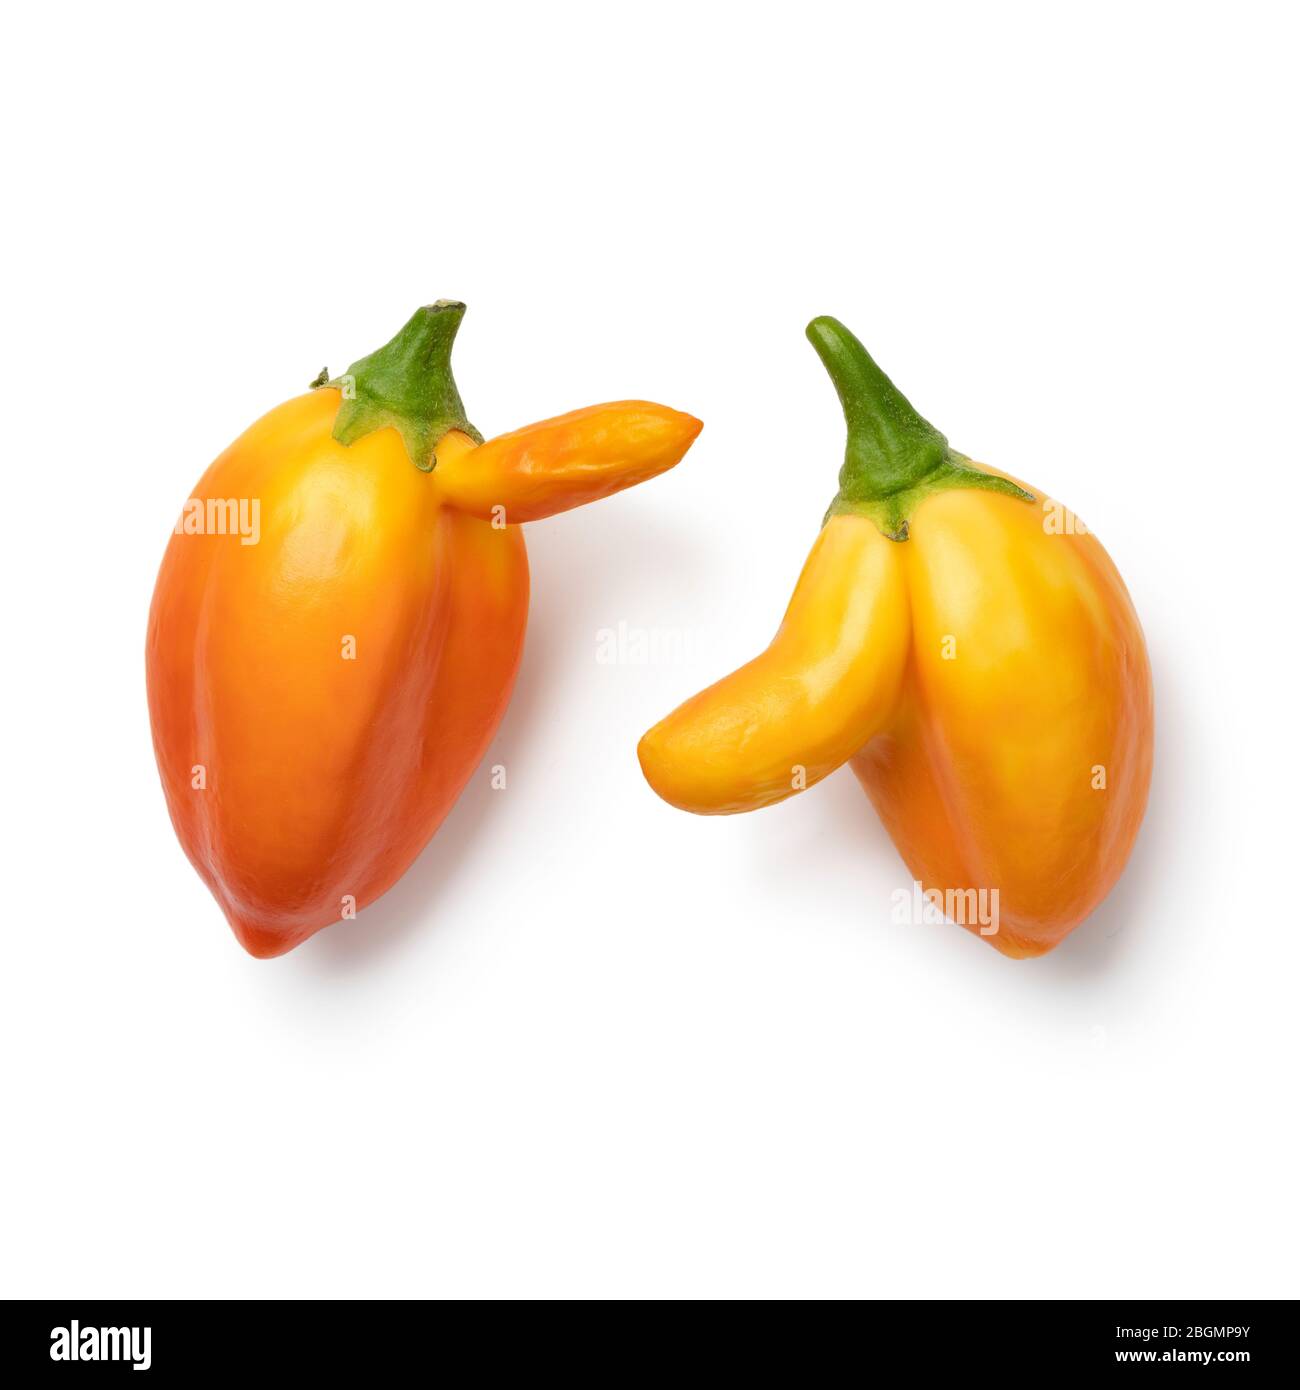 Coppia di mini melanzane fresche deformati arancioni primo piano isolato su sfondo bianco Foto Stock